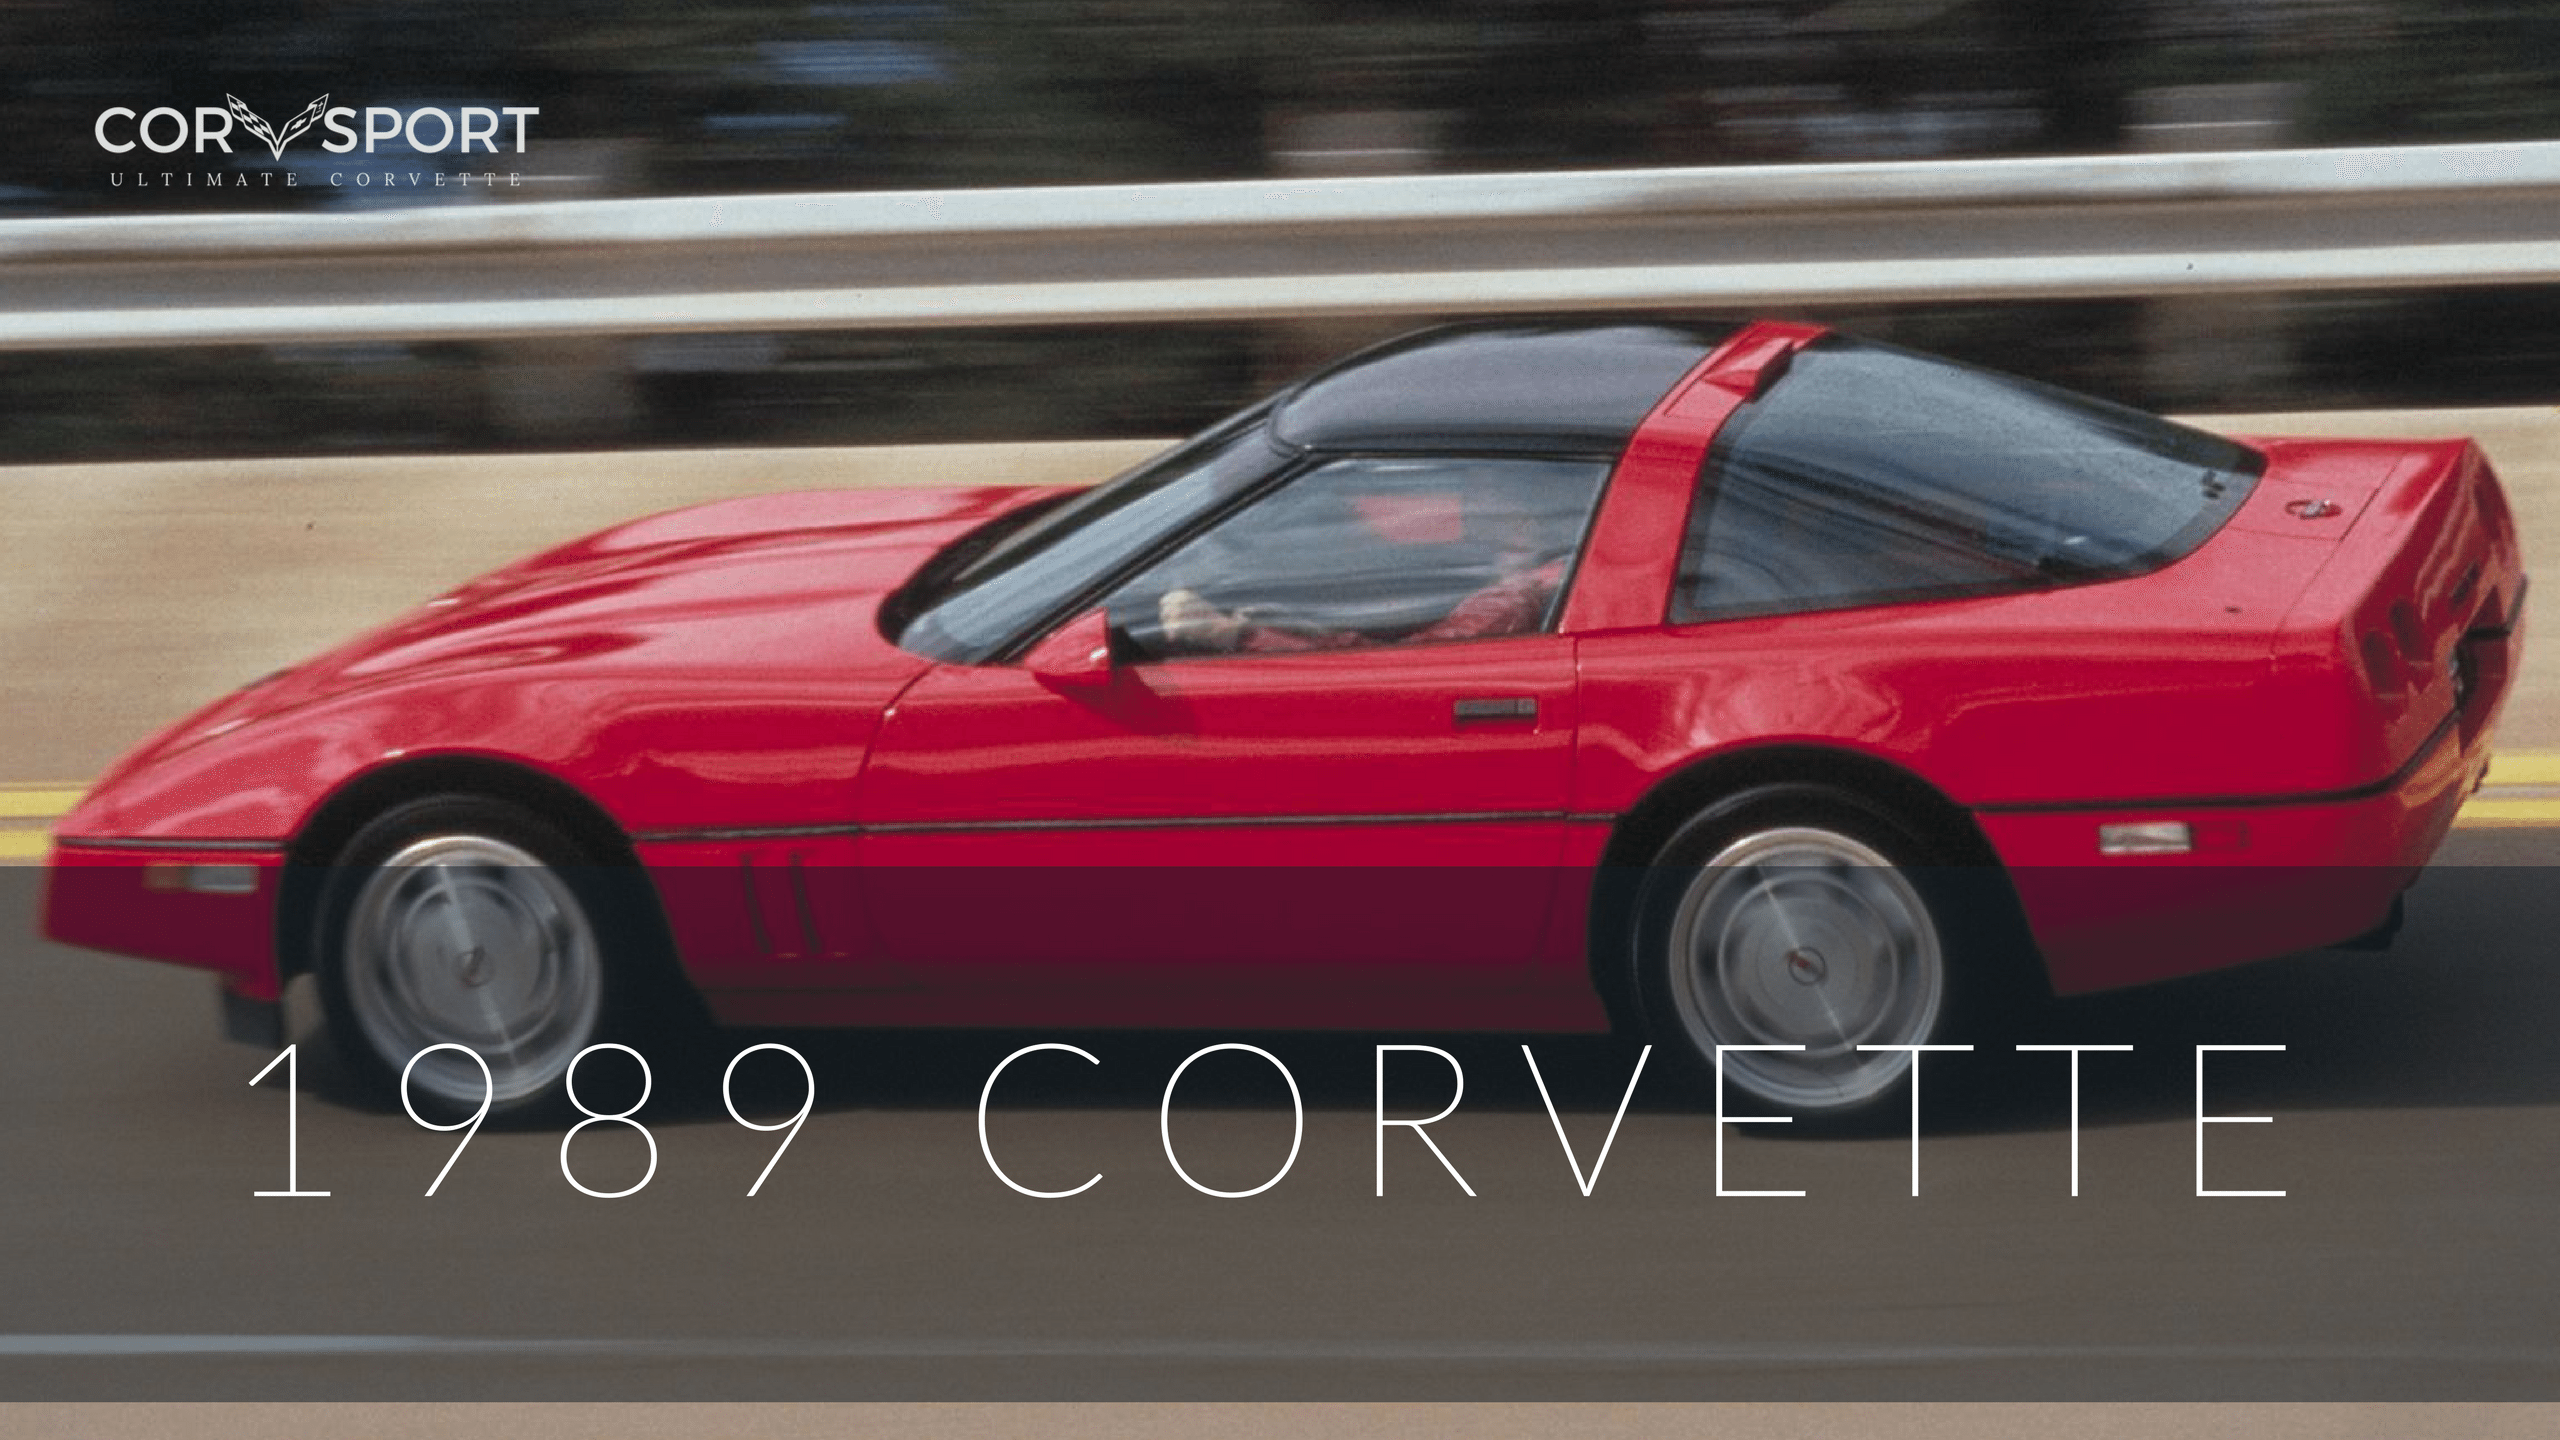 1989 Corvette Engine Compartment Diagram